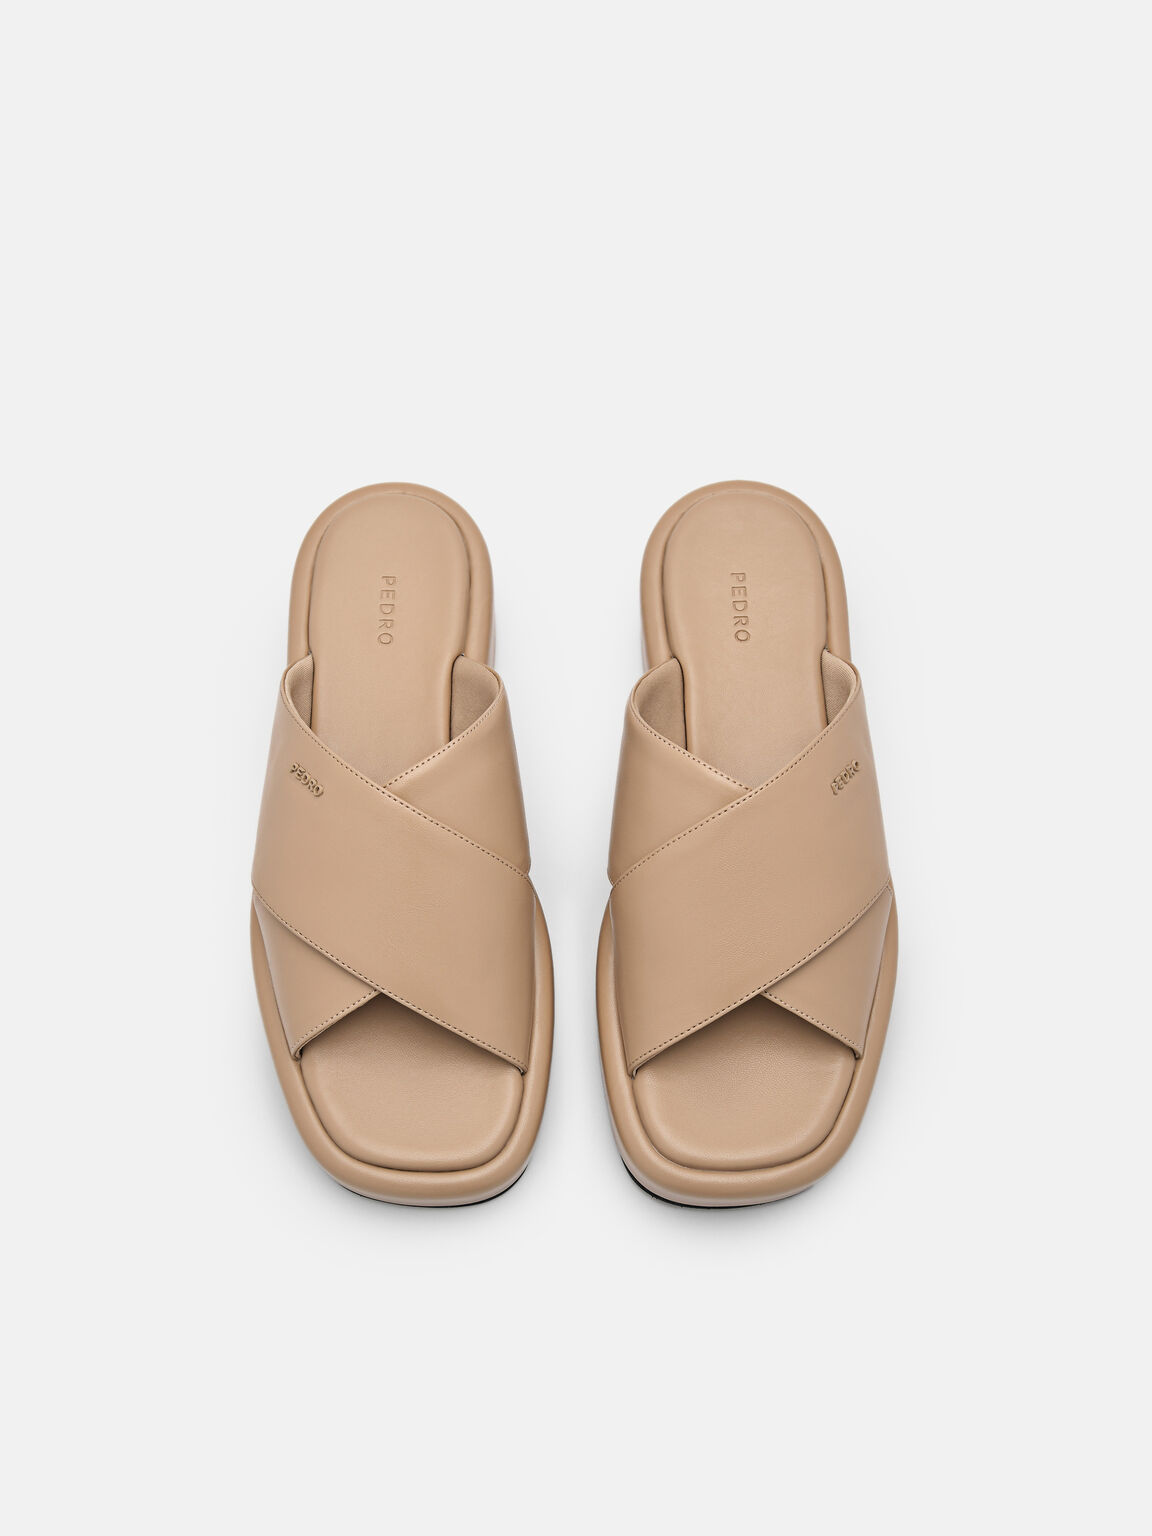 Izzie Wedge Sandals, Sand